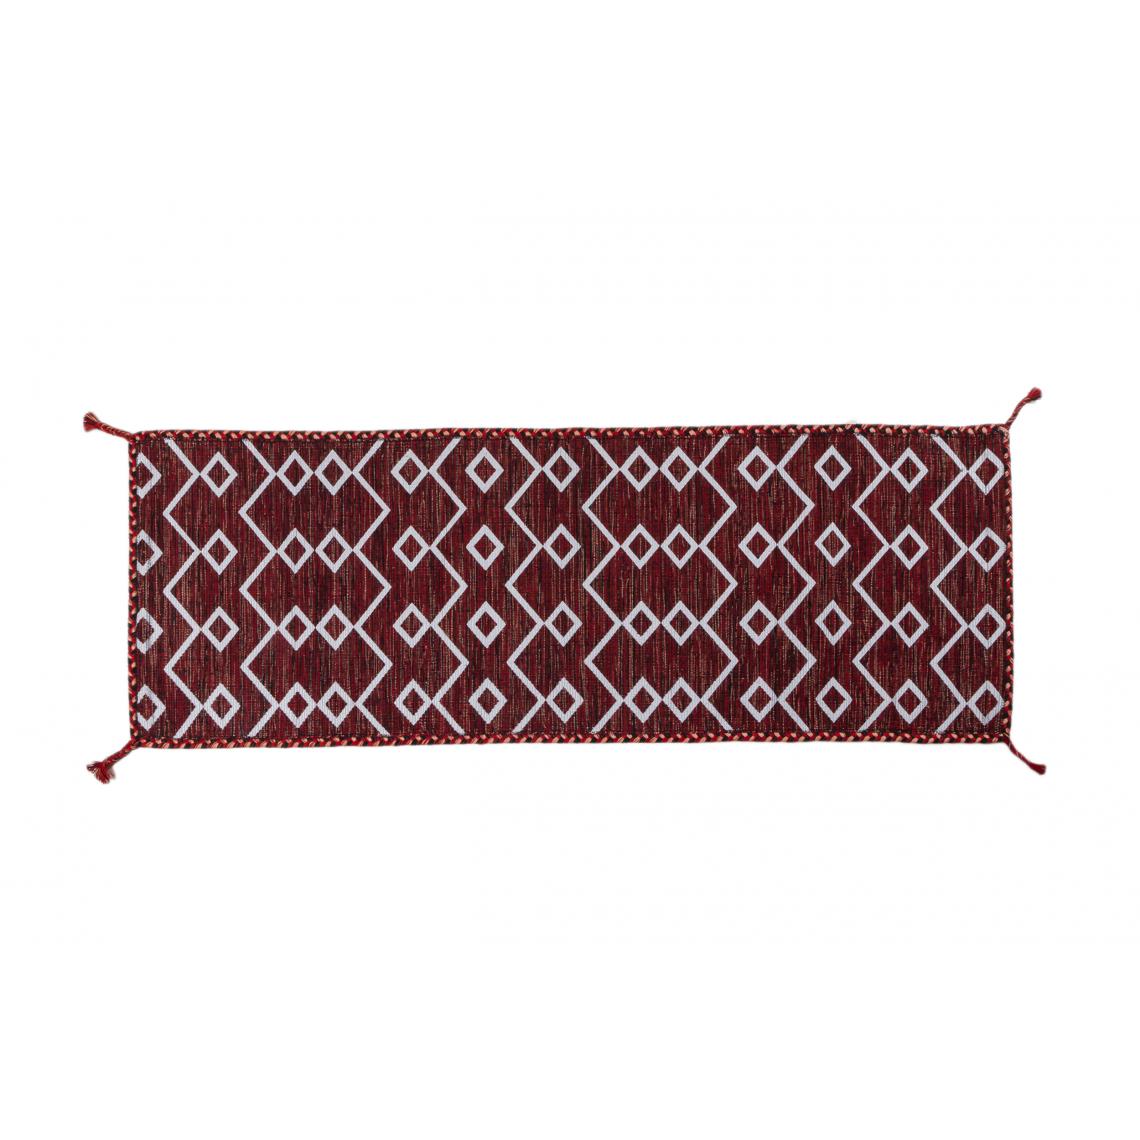 Alter - Tapis moderne Toronto, style kilim, 100% coton, rouge, 180x60cm - Tapis